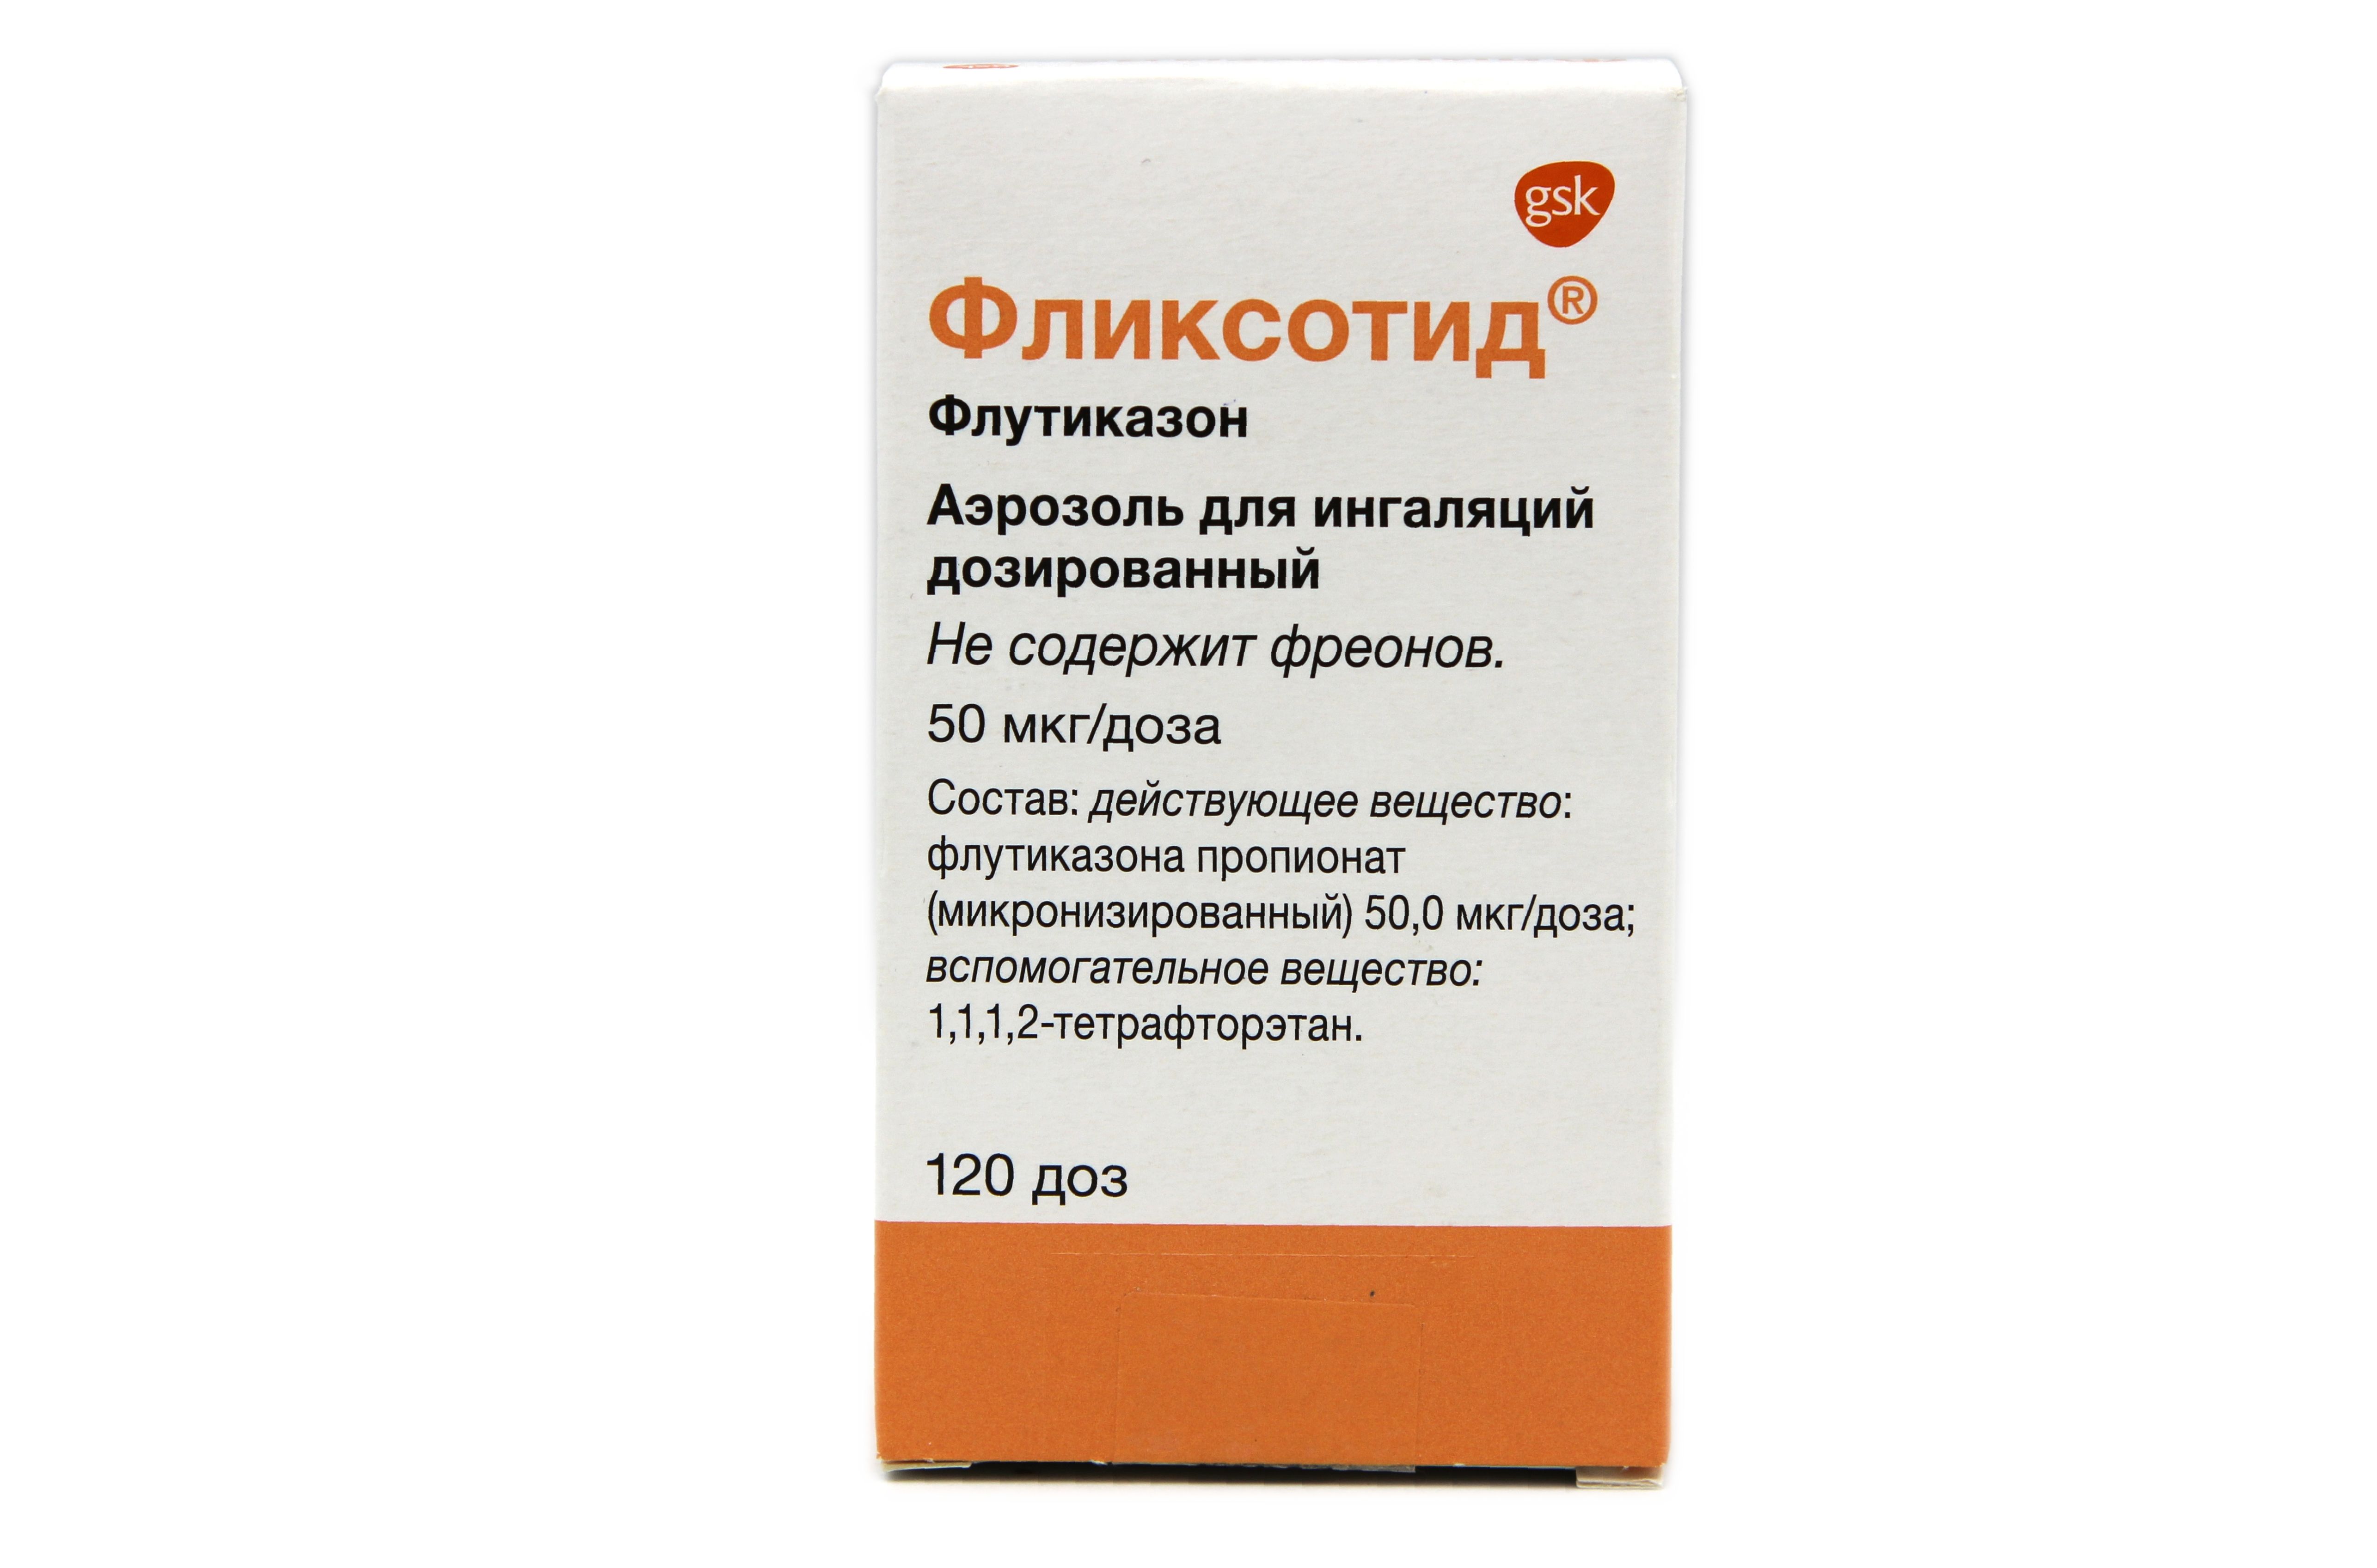 Фликсотид 250 Цена В Москве В Аптеках